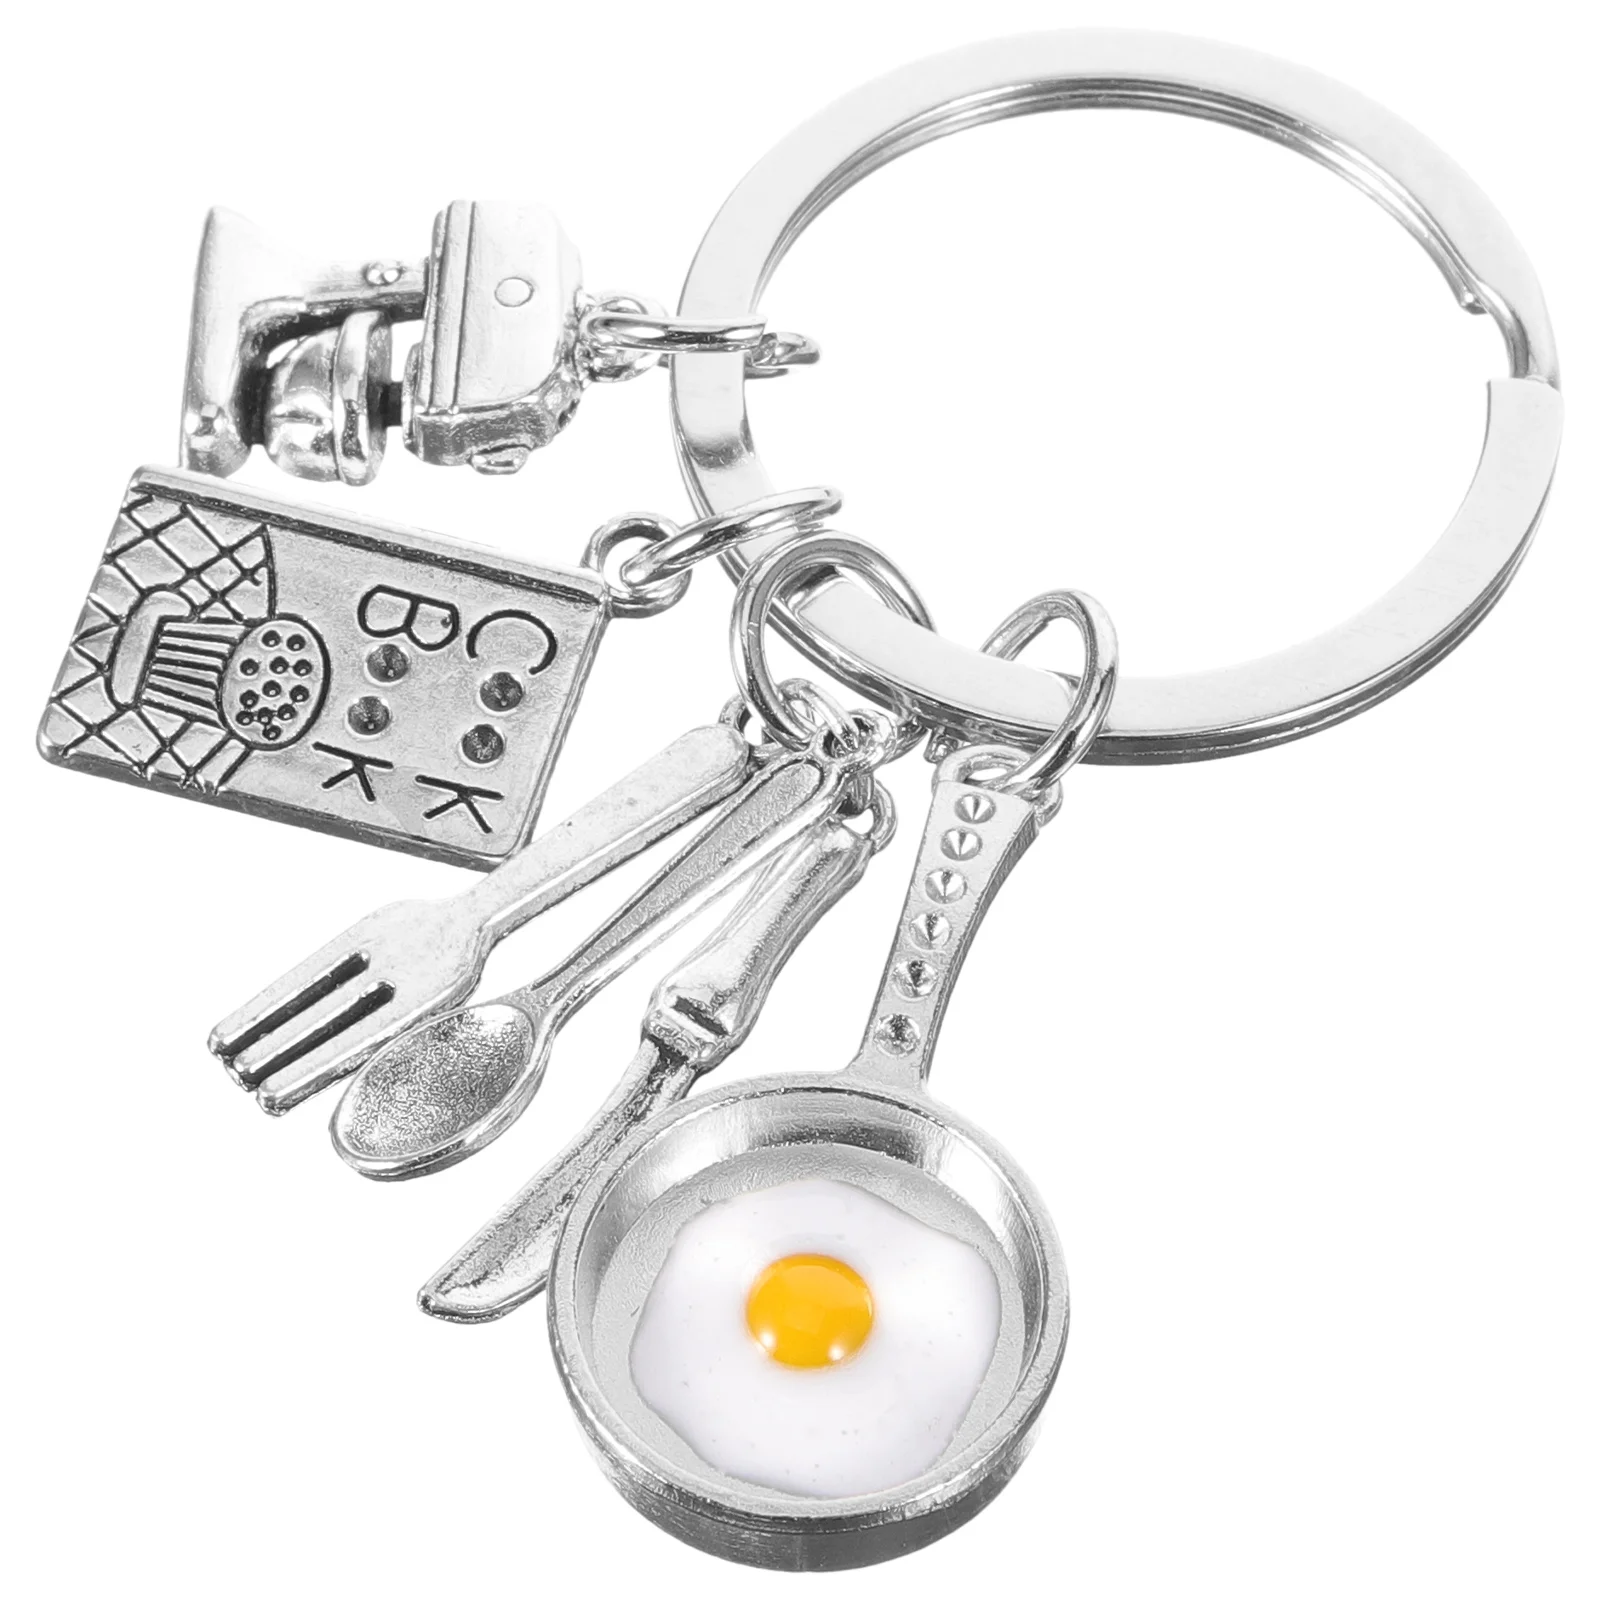 

Fried Egg Keychain Backpack Pendant Charm Bag Keyring Utensil Tableware Keychains Car Keys Women